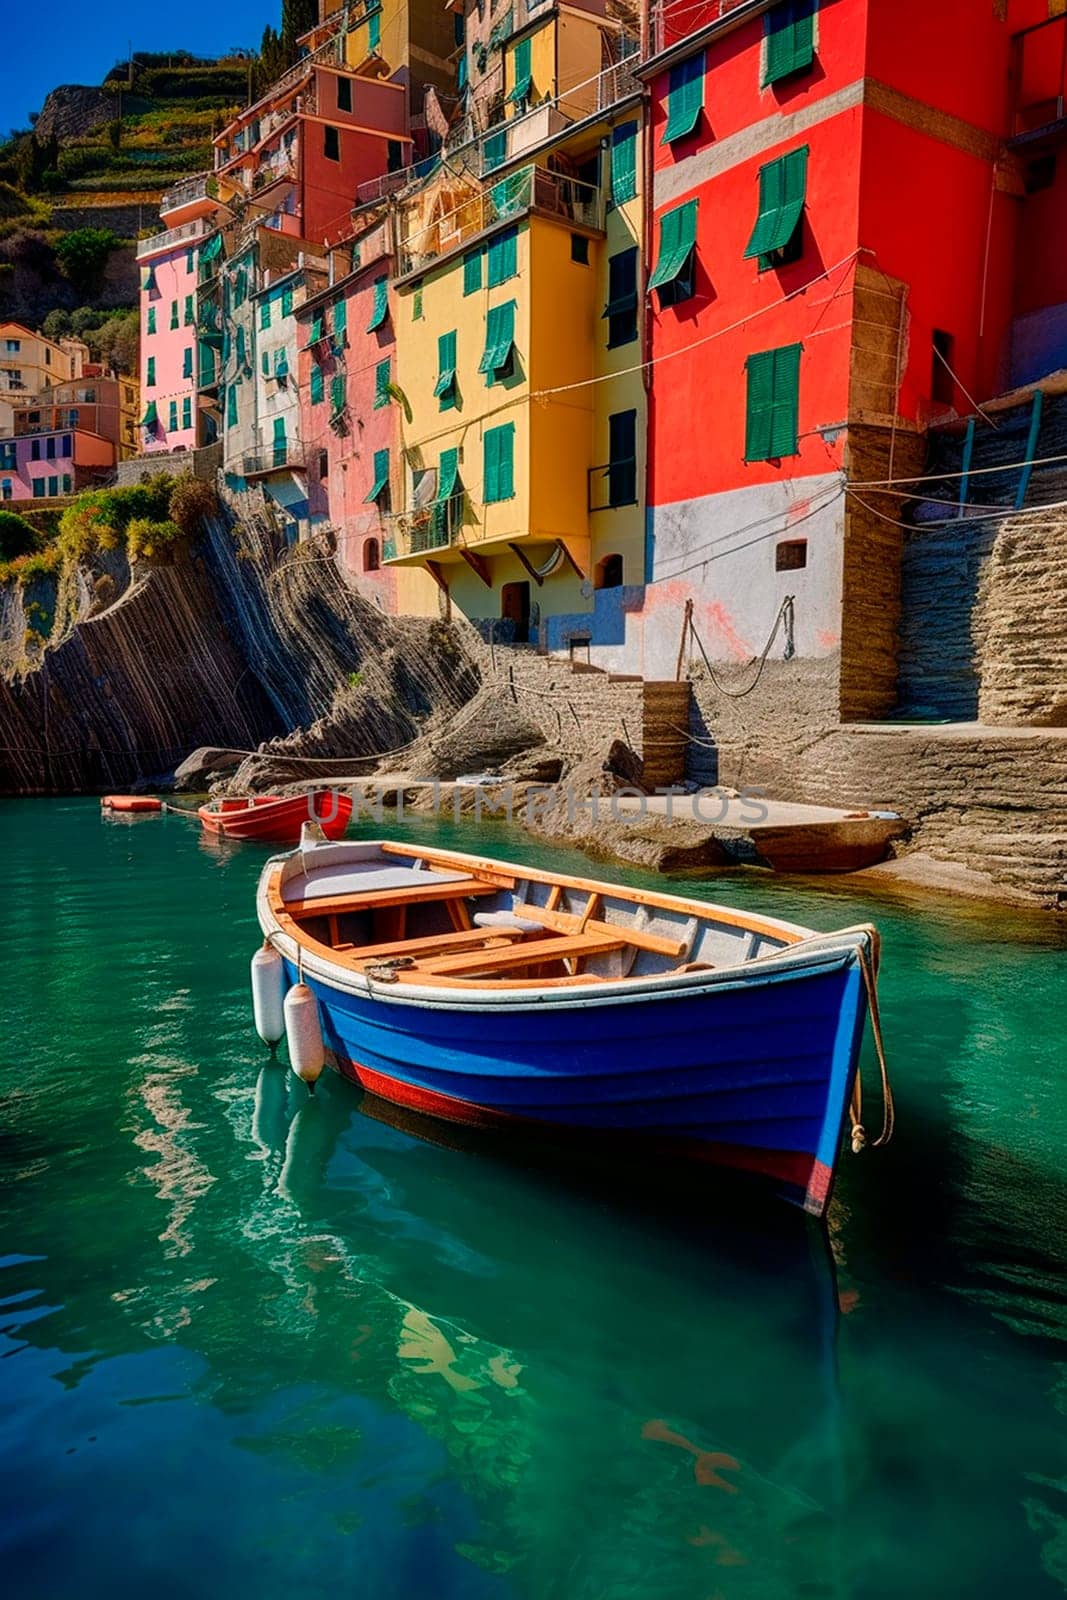 Peaceful fishing village of Riomaggiore, cliffside, colorful buildings, Cinque Terre coast, Italian river, Mediterranean sea, Europe. Generative AI, Summer.